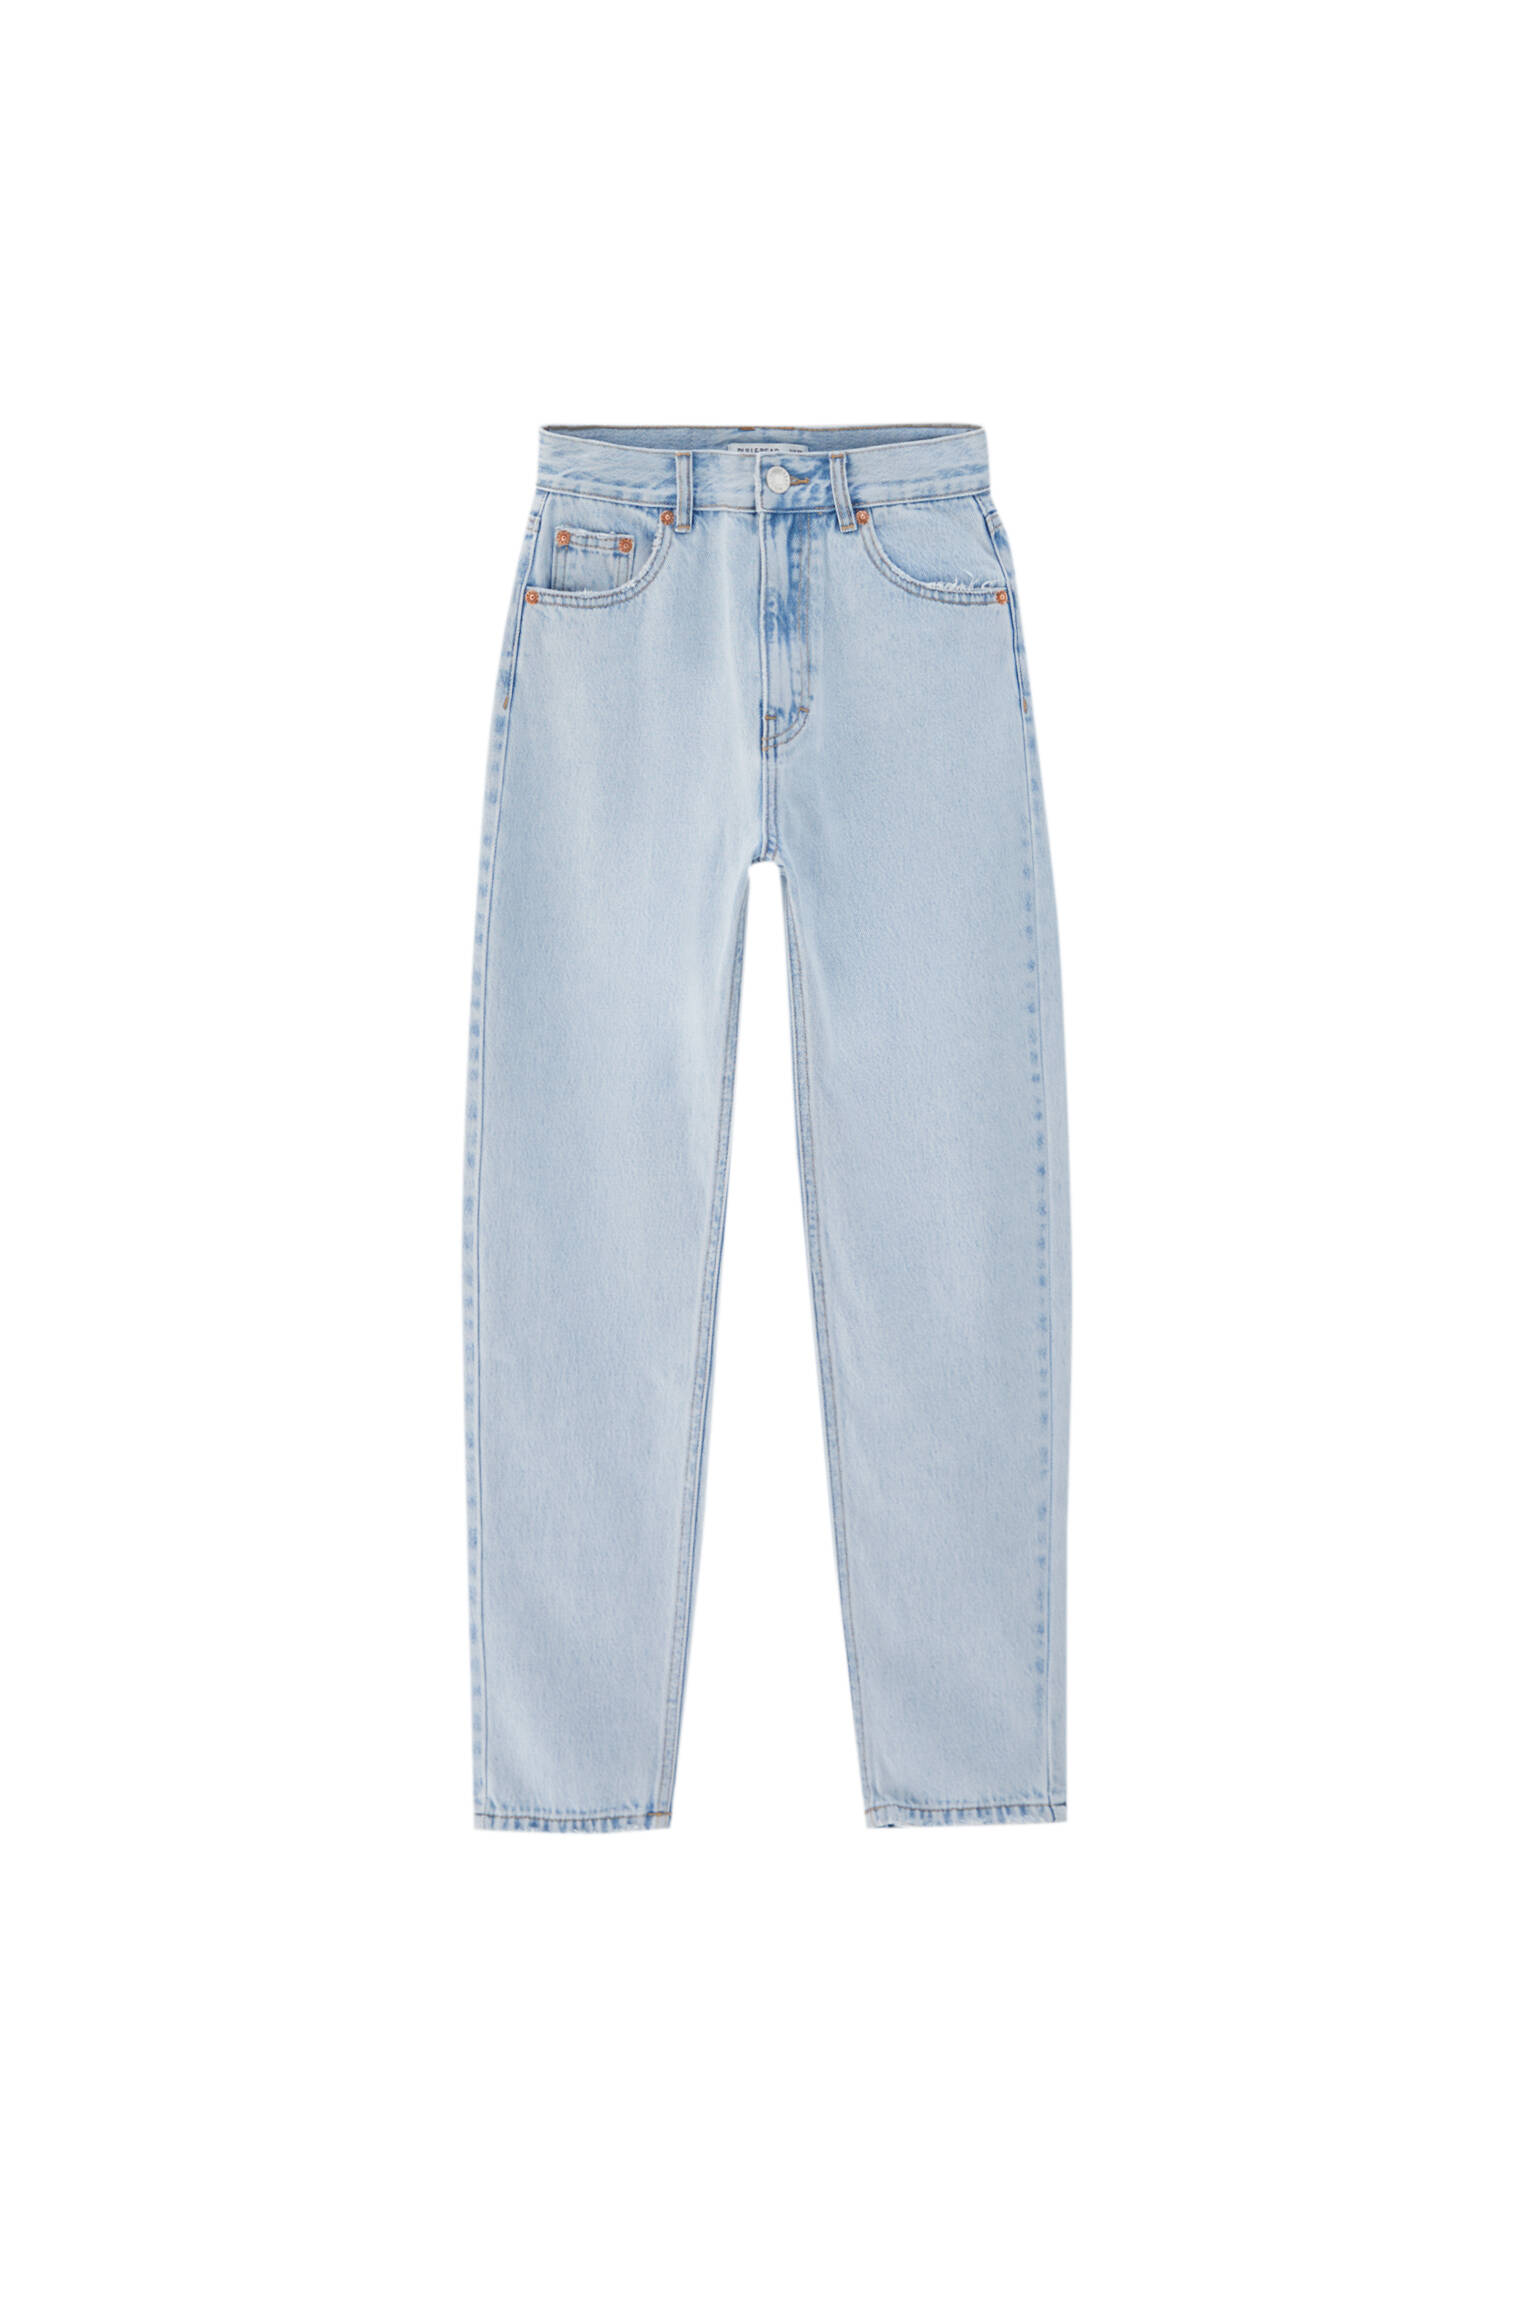 ЛИНЯЛЫЙ СИНИЙ Базовые джинсы mom fit - органический хлопок (не менее 50%) Pull & Bear